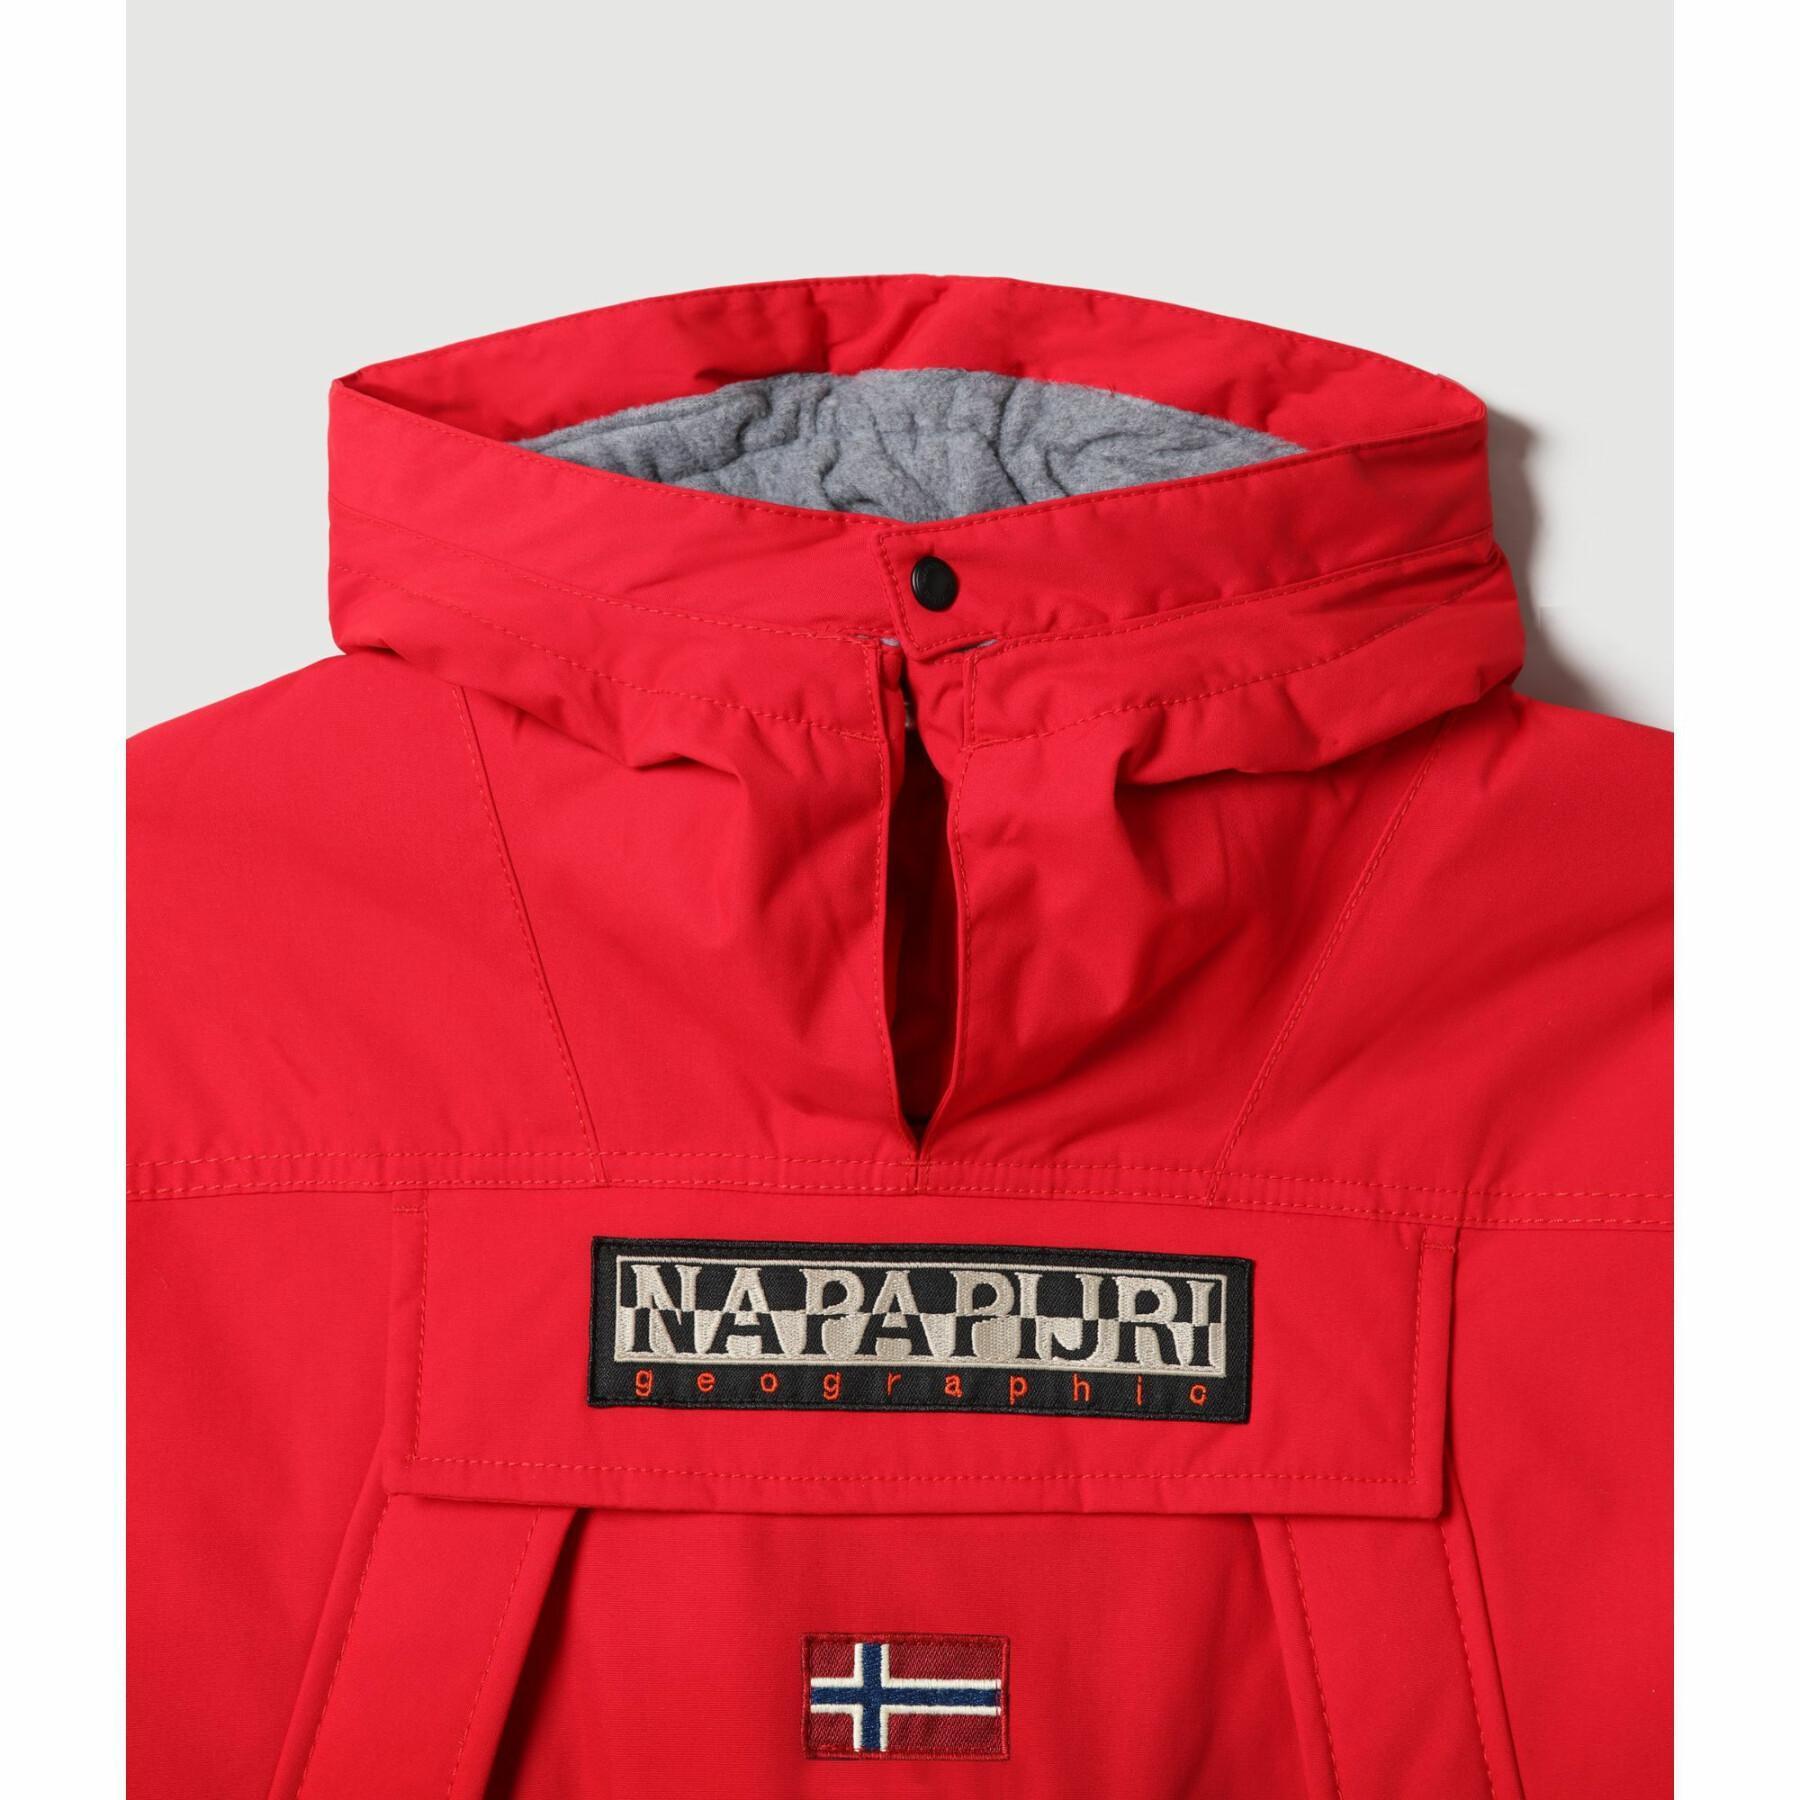 Children's jacket Napapijri skidoo